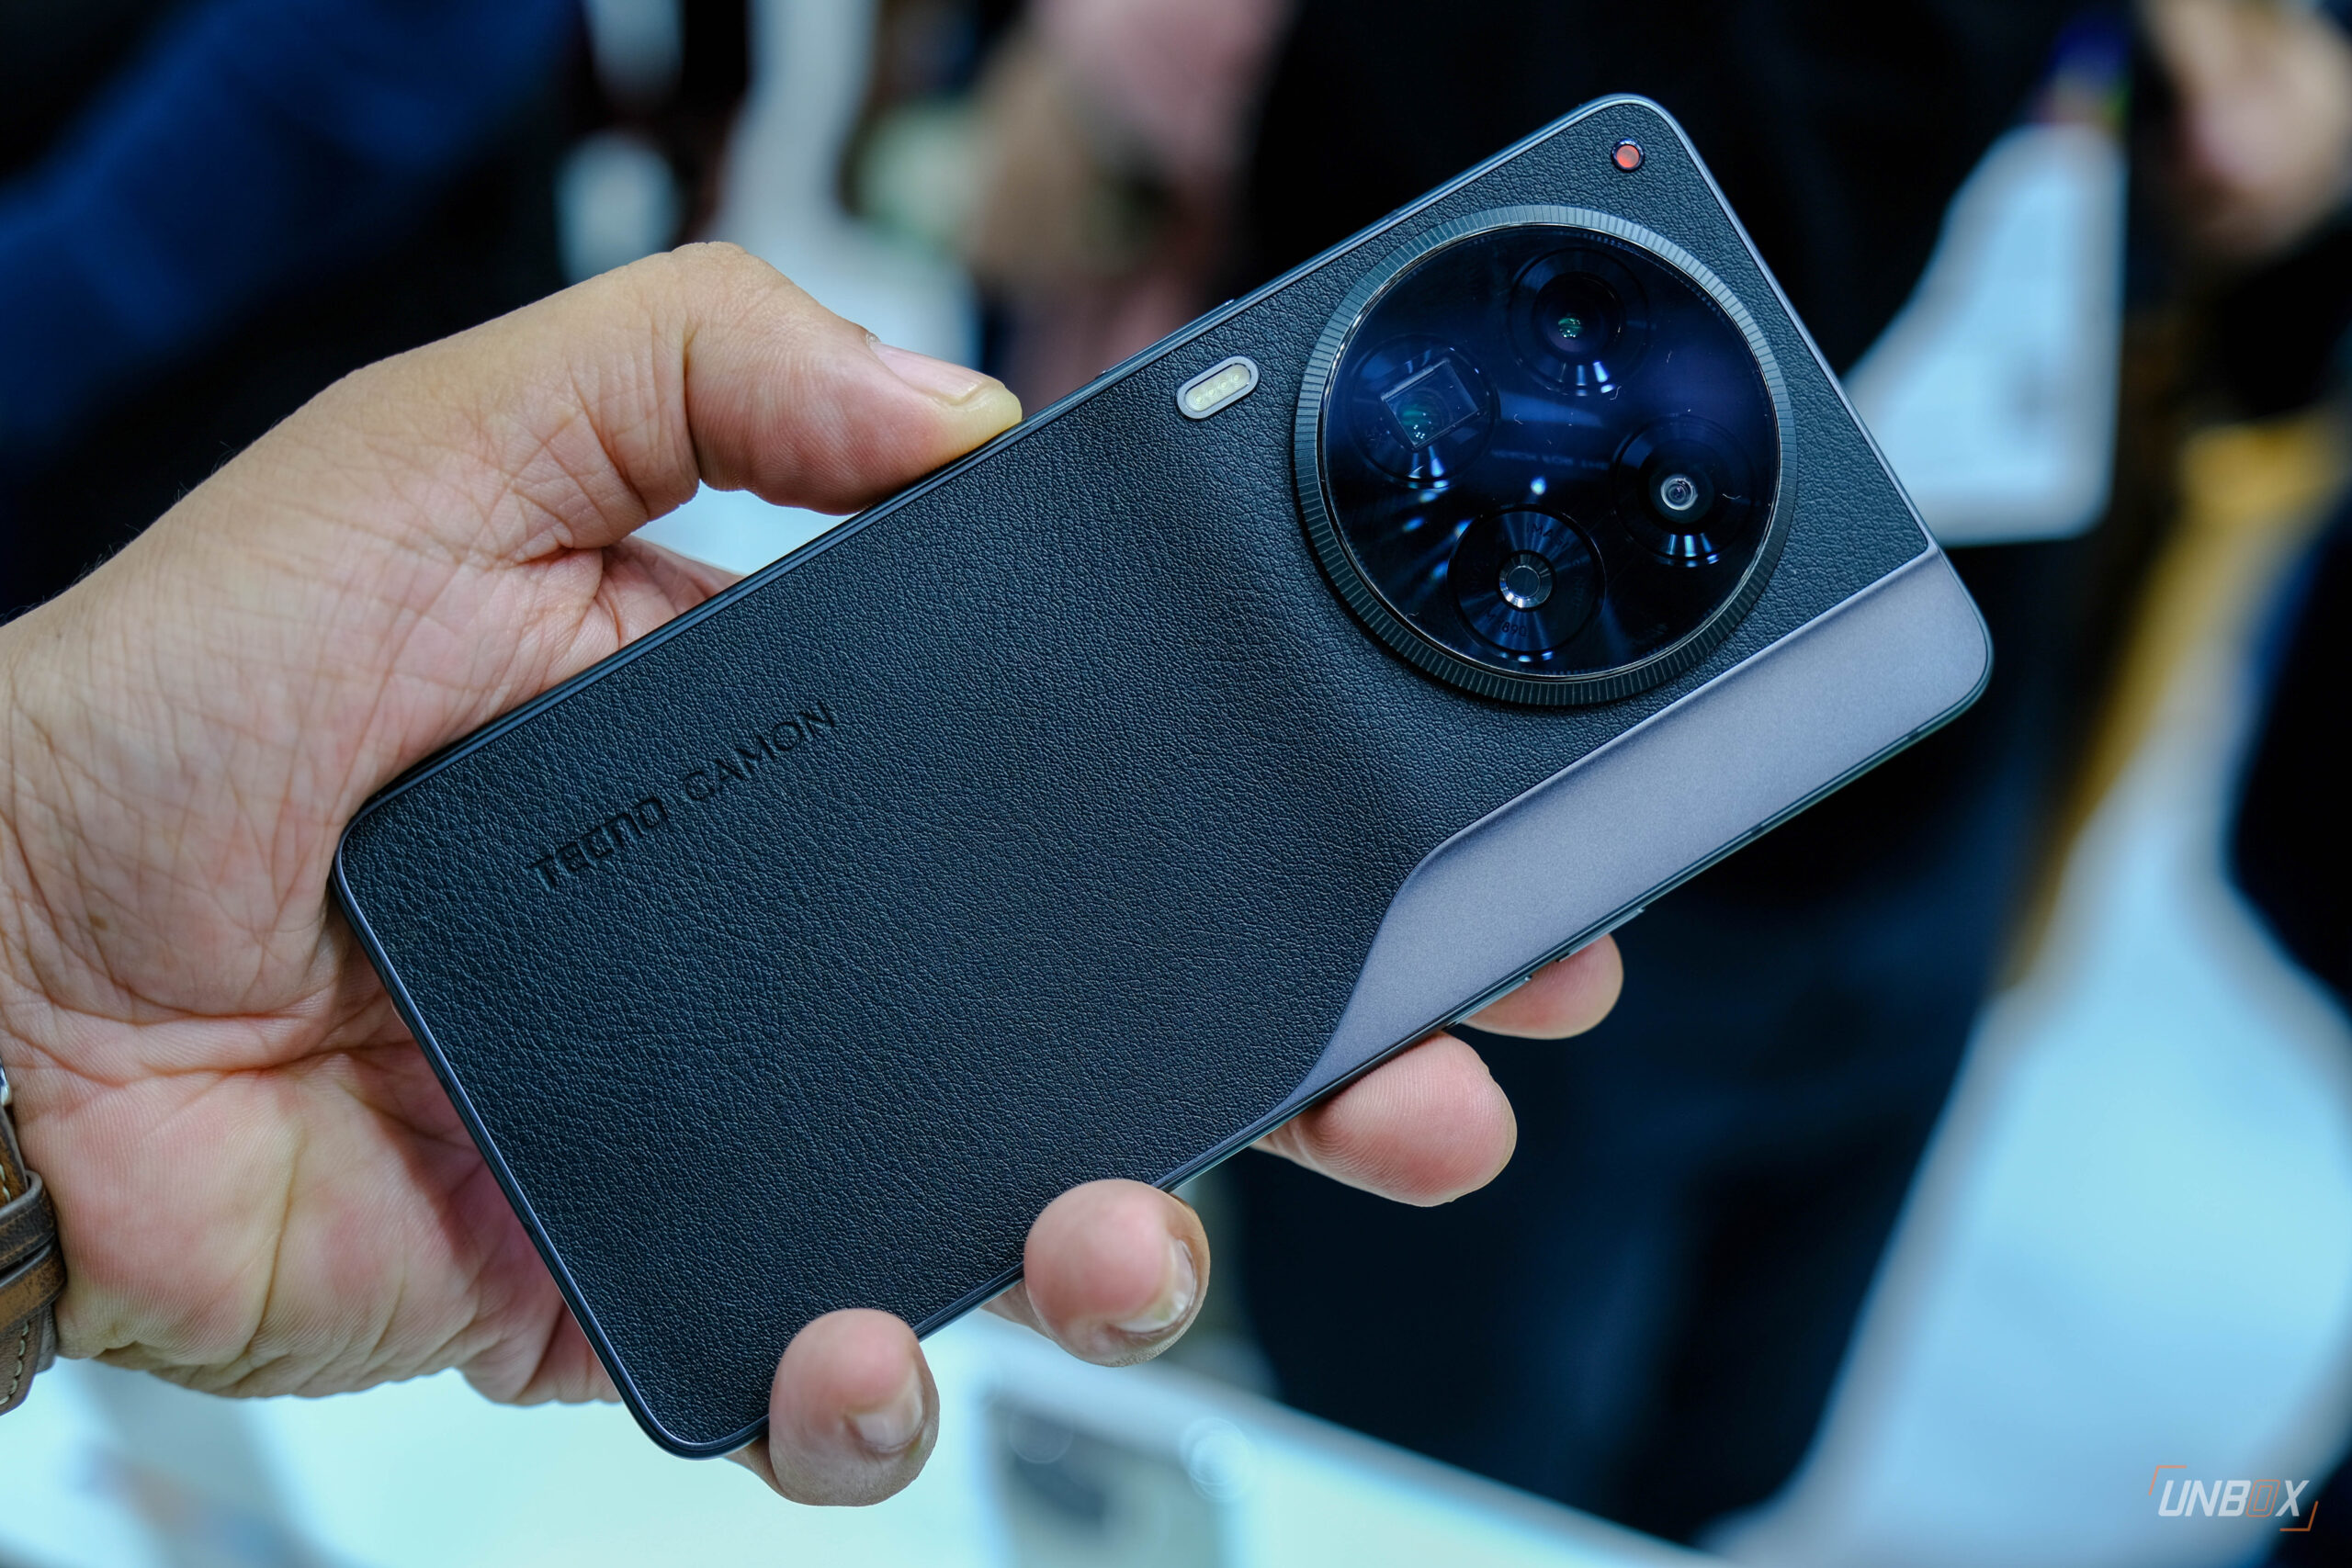 nubia Z50S Pro unveiled: 35mm lens, Snapdragon 8+ Gen2 » YugaTech